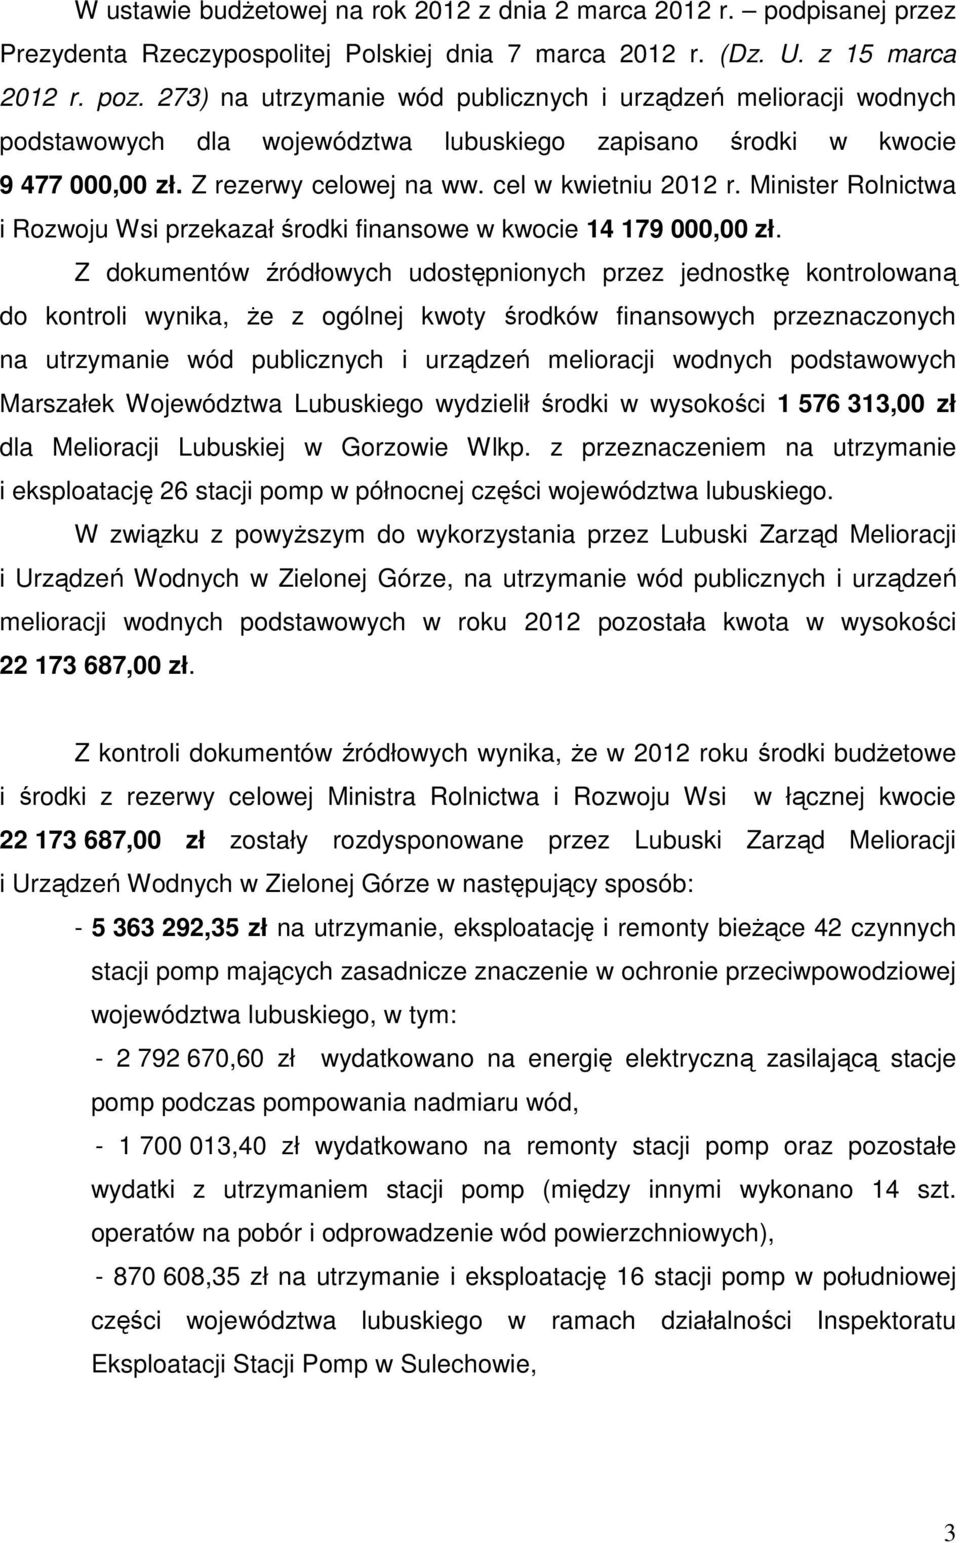 Minister Rolnictwa i Rozwoju Wsi przekazał środki finansowe w kwocie 14 179 000,00 zł.